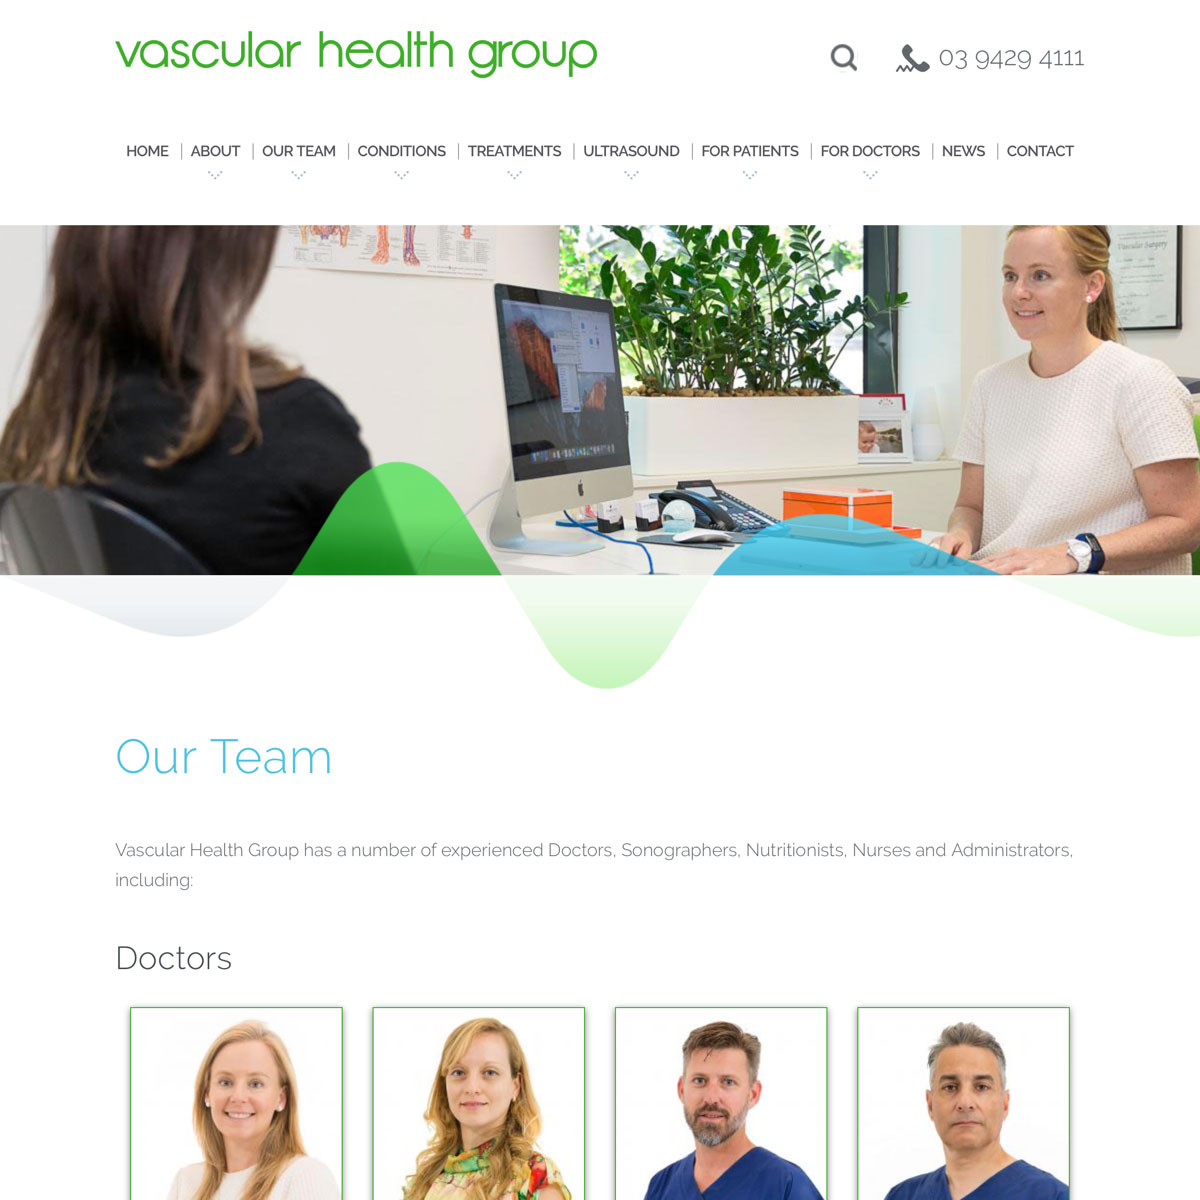 Vascular Health Group - Our Team